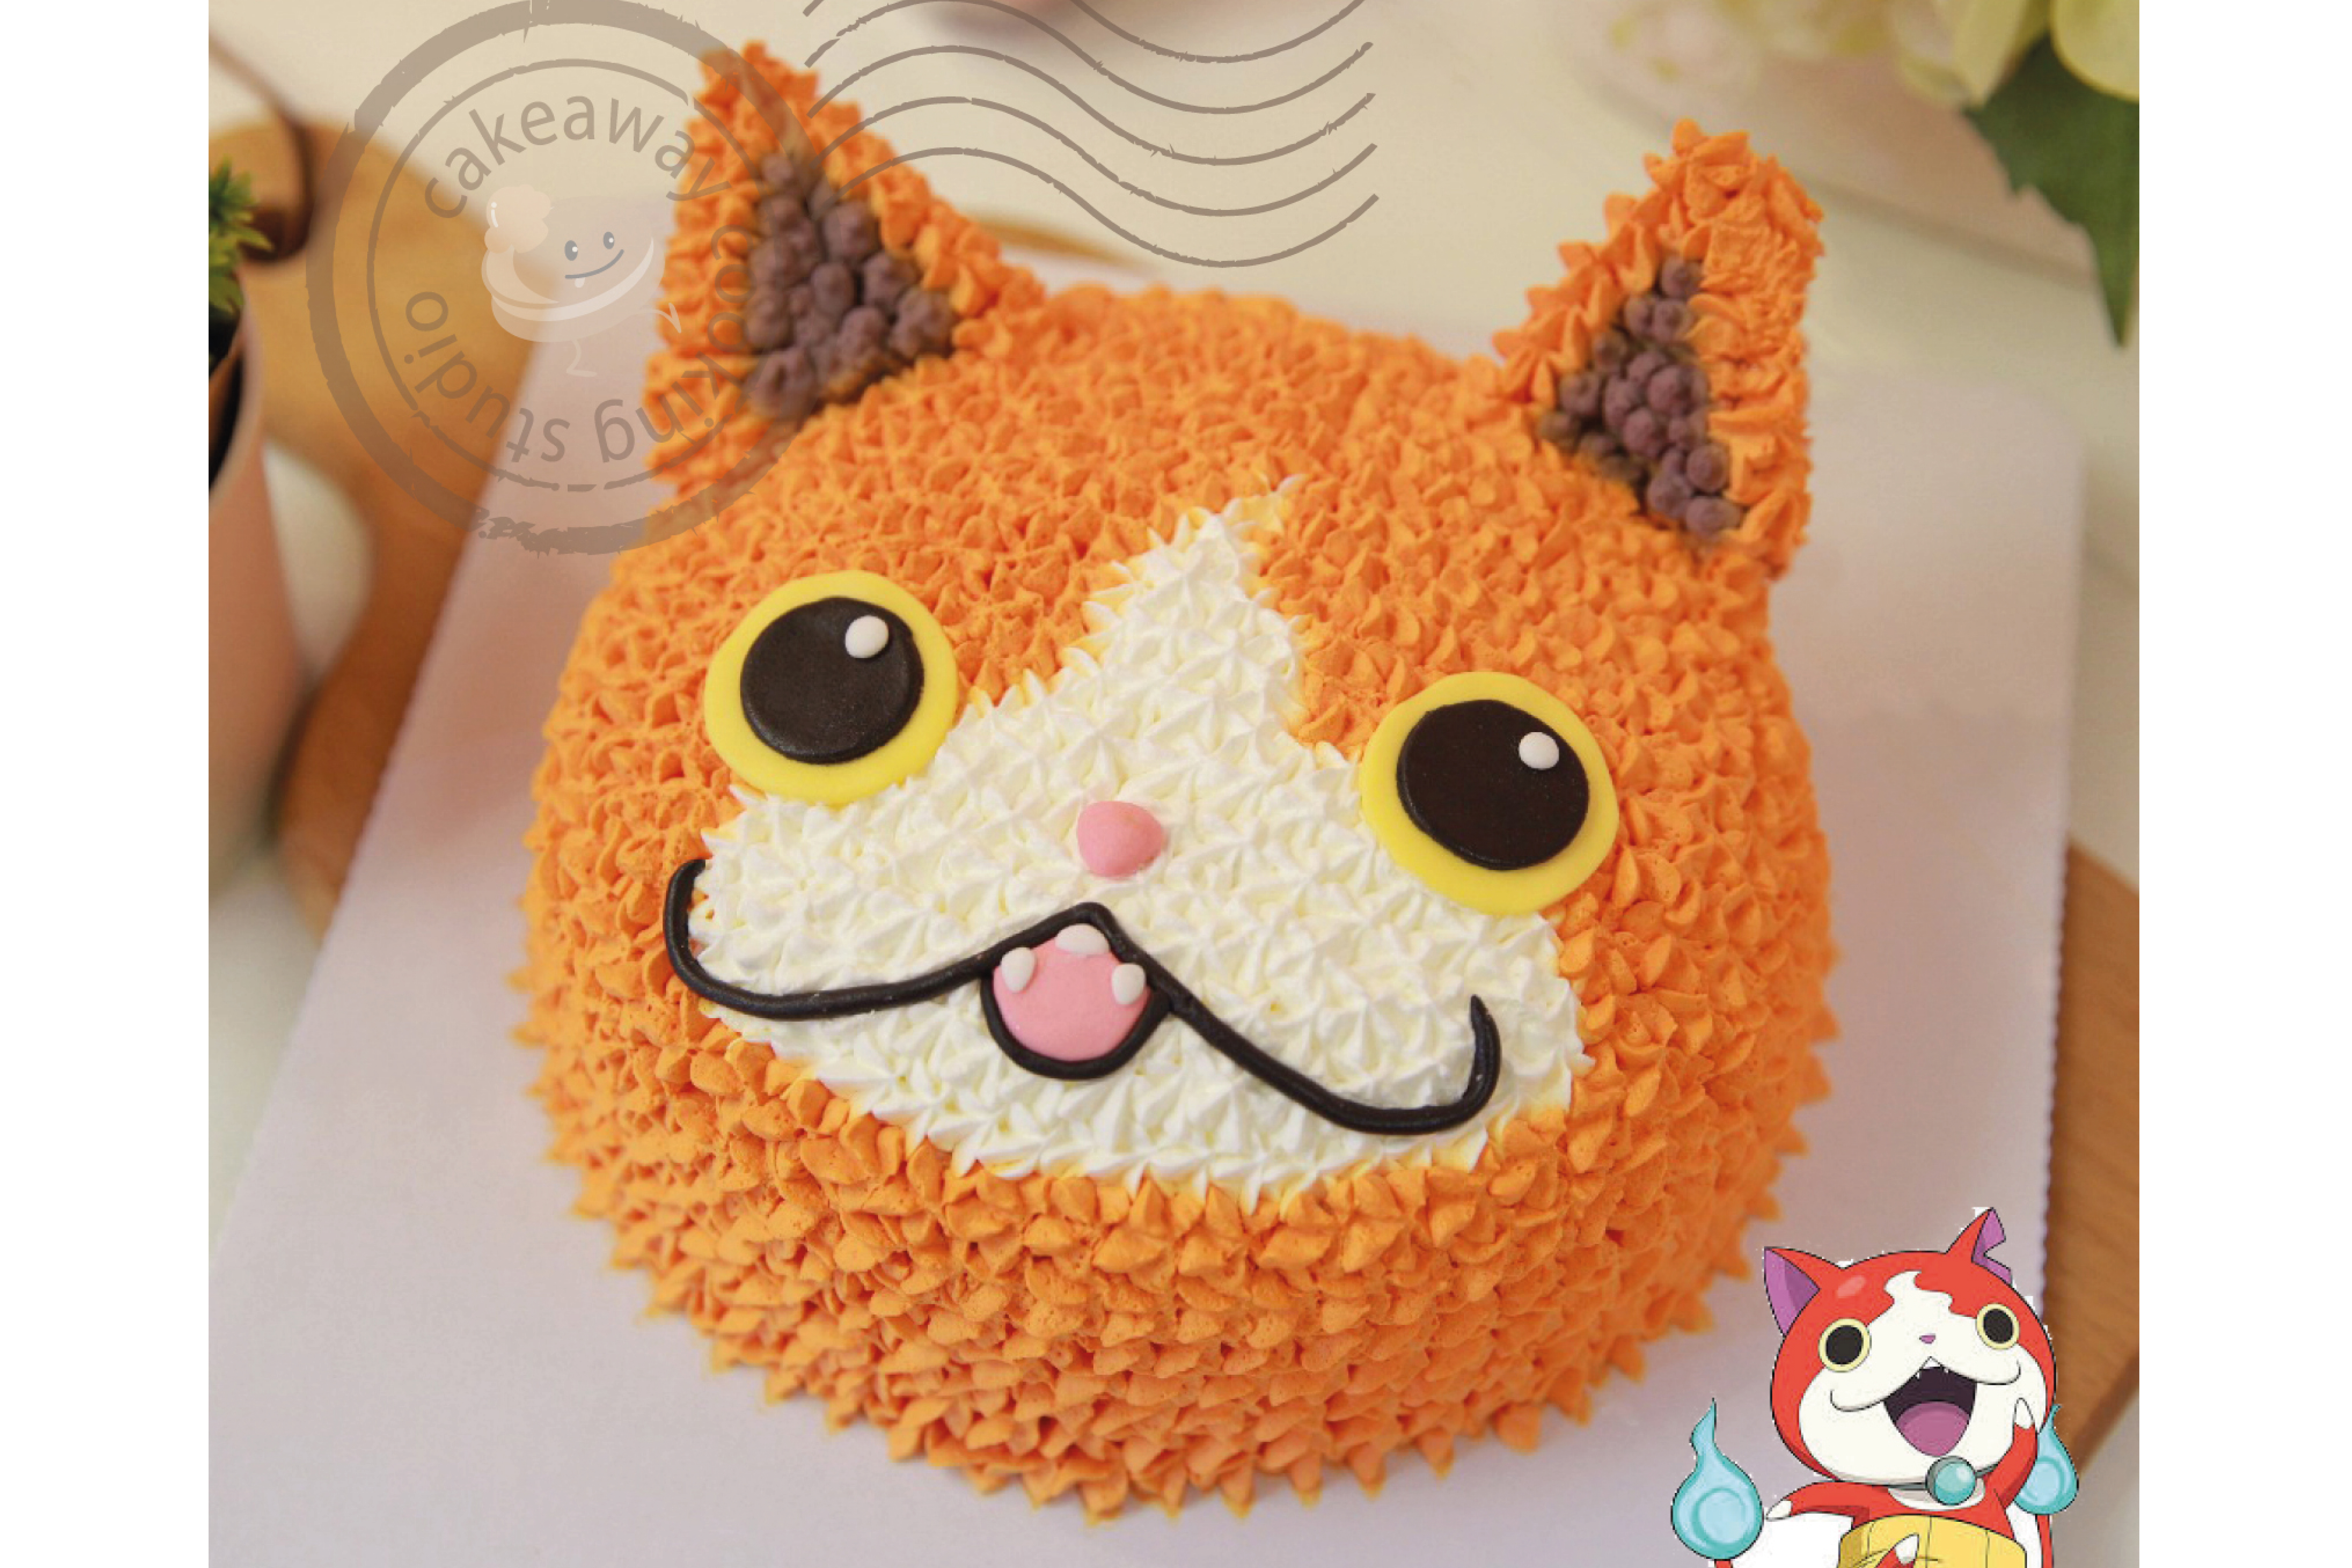 cat-cake-01